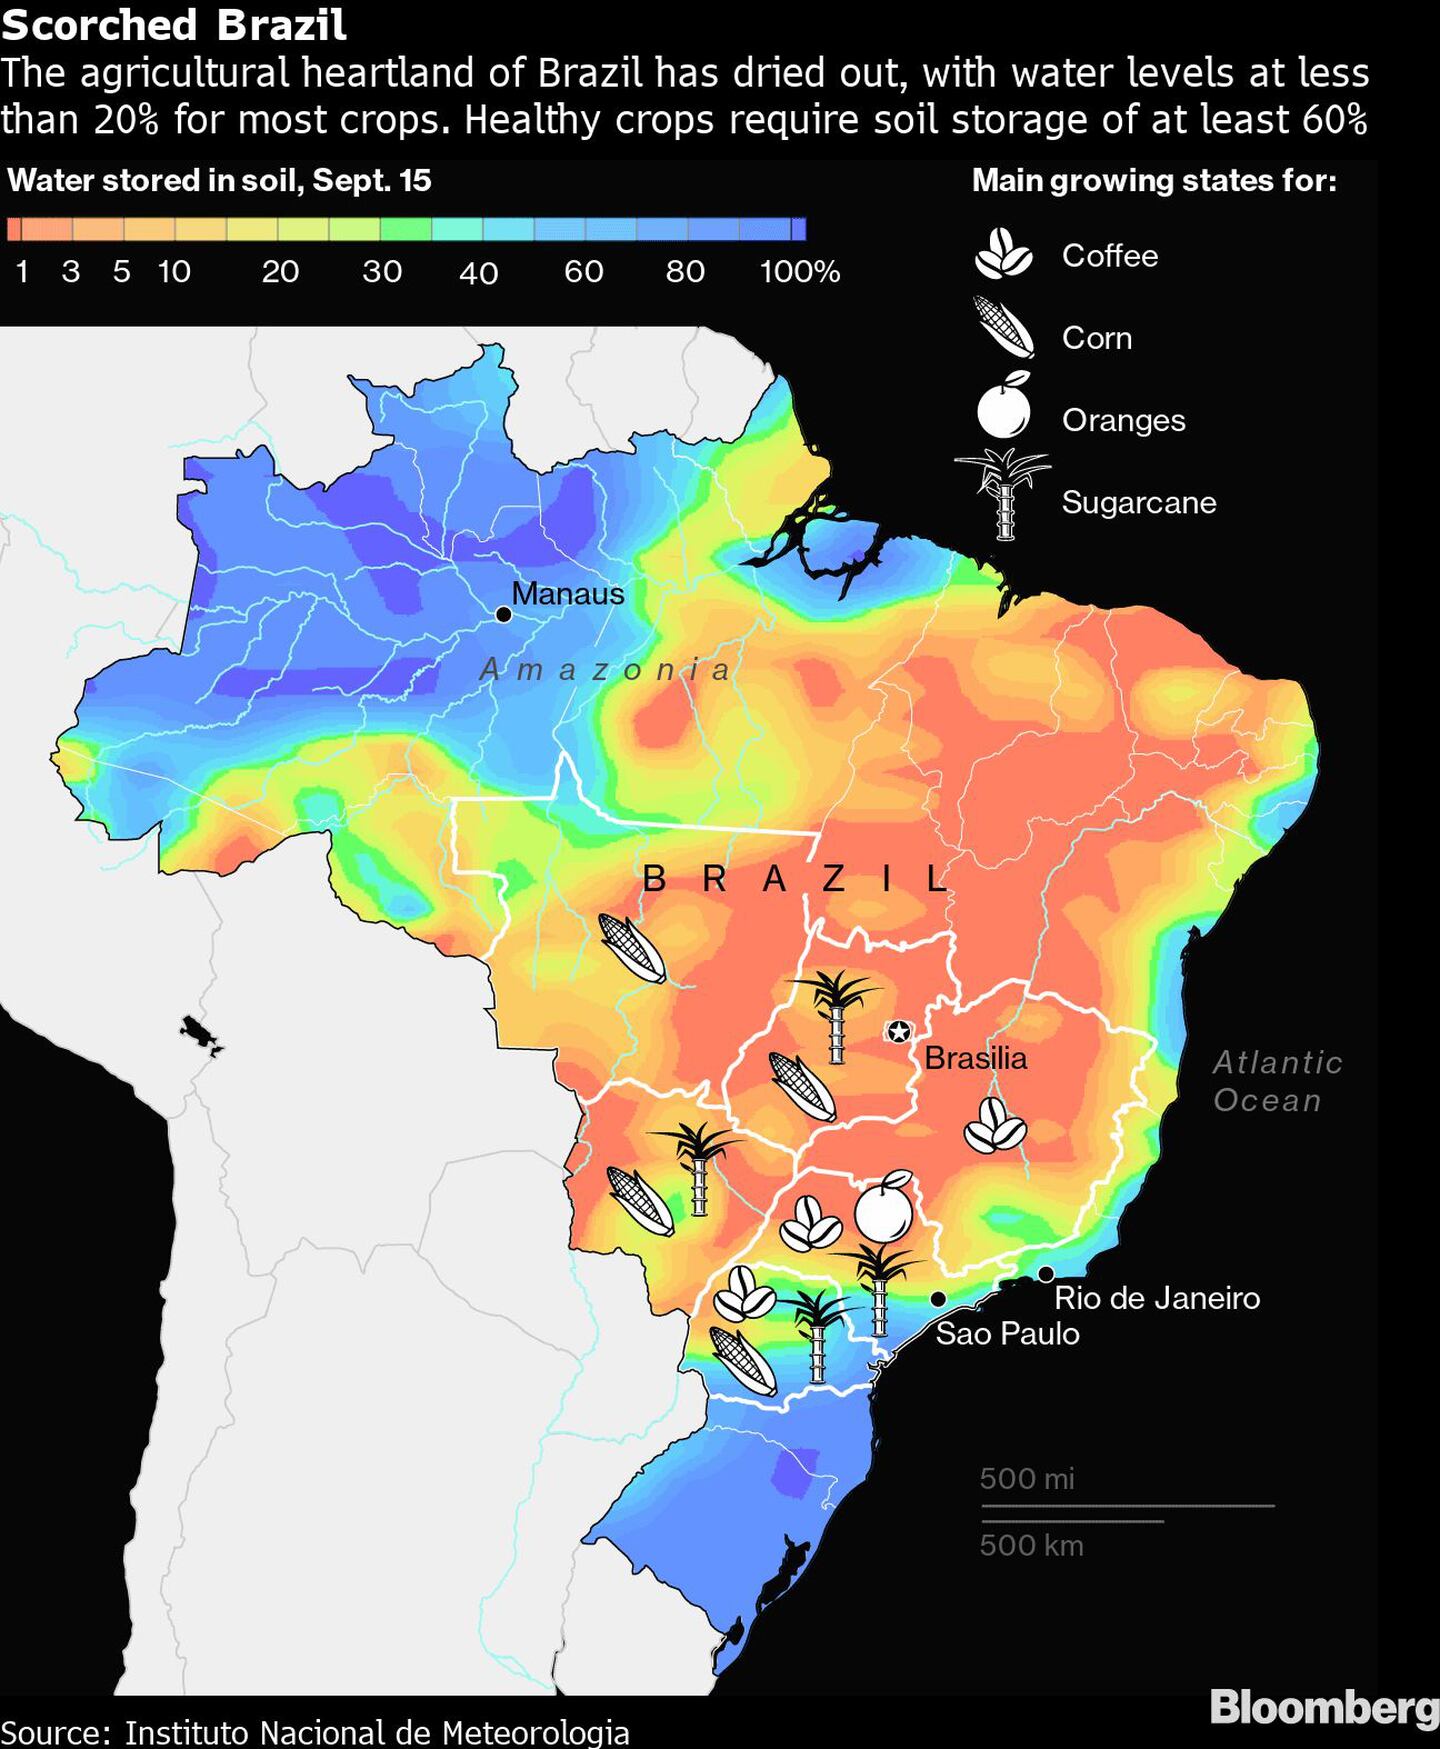 El corazón agrícola de Brasil se secó, con niveles de agua inferiores al 20% para la mayoría de los cultivos. Los cultivos sanos requieren un almacenamiento en el suelo de al menos el 60%. dfd